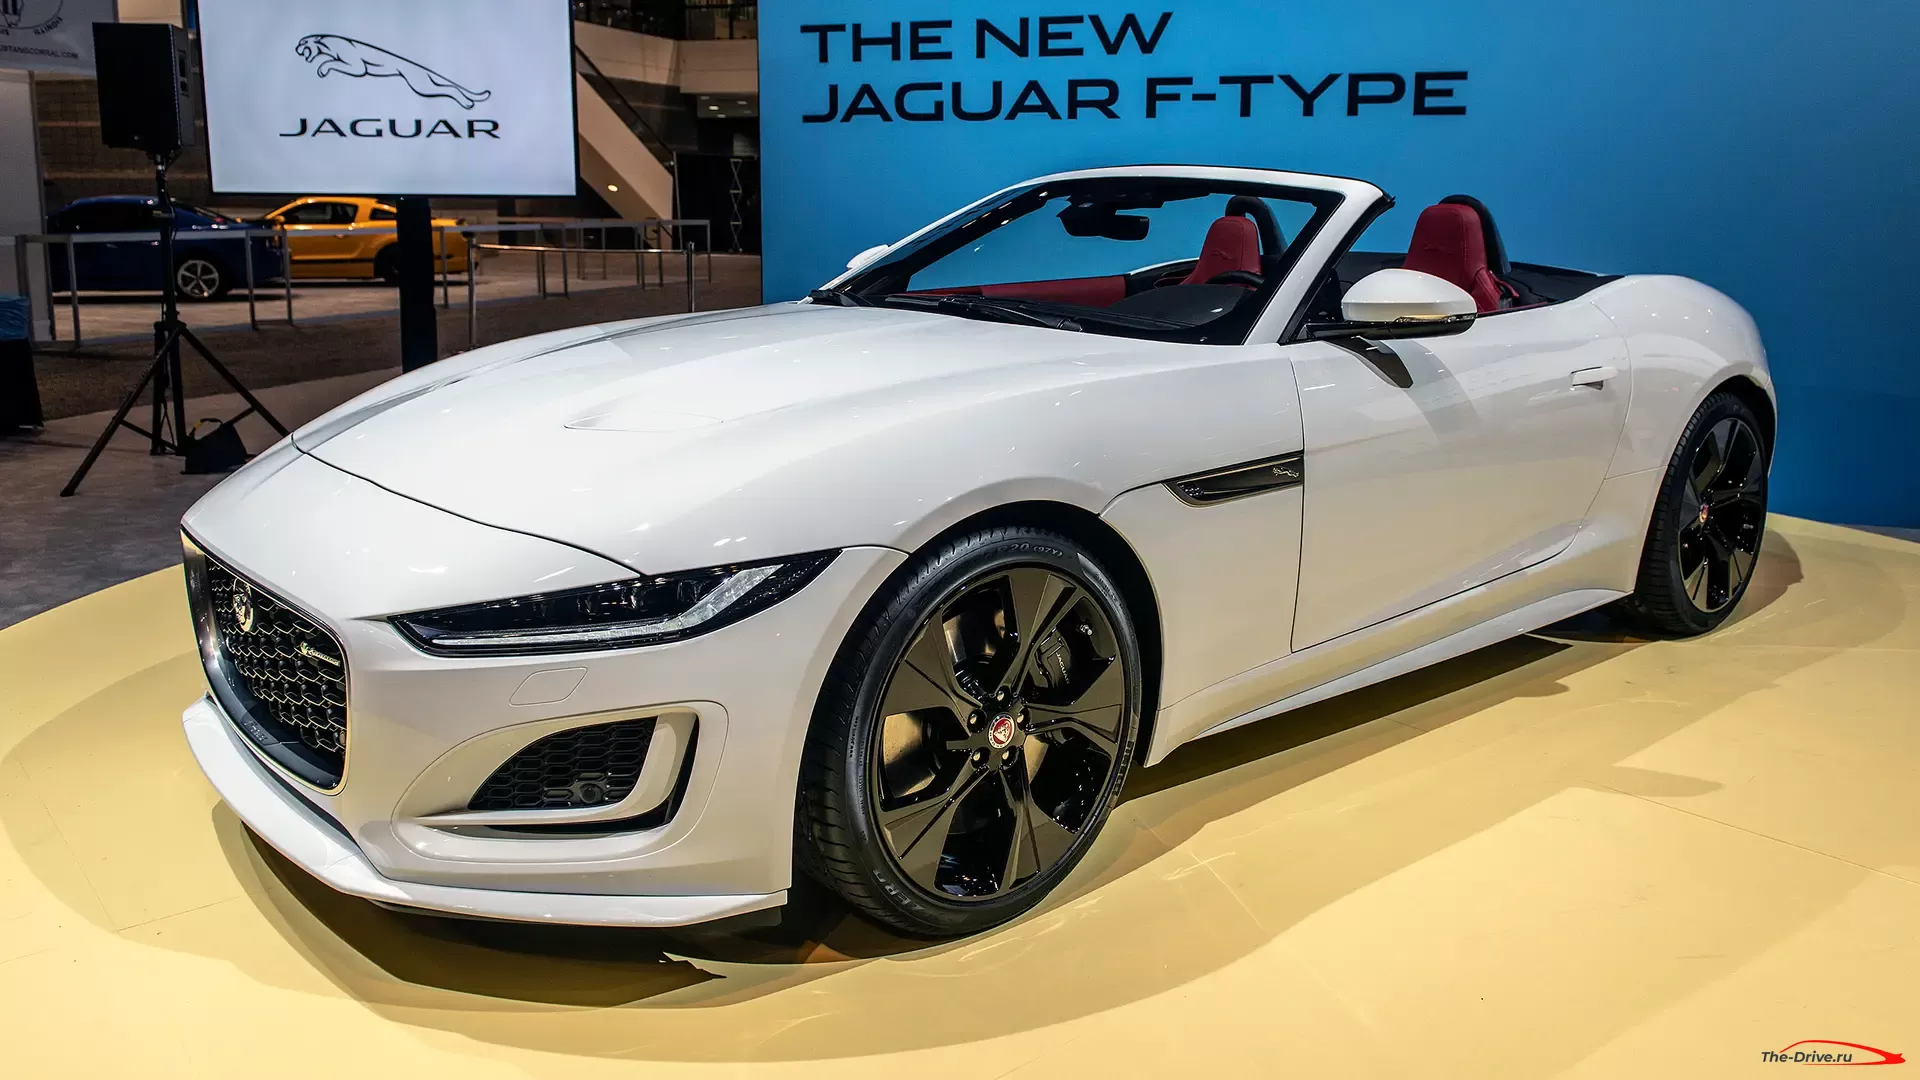 Jaguar F-Type 2021 года. Объявлены цены, включая значительное снижение